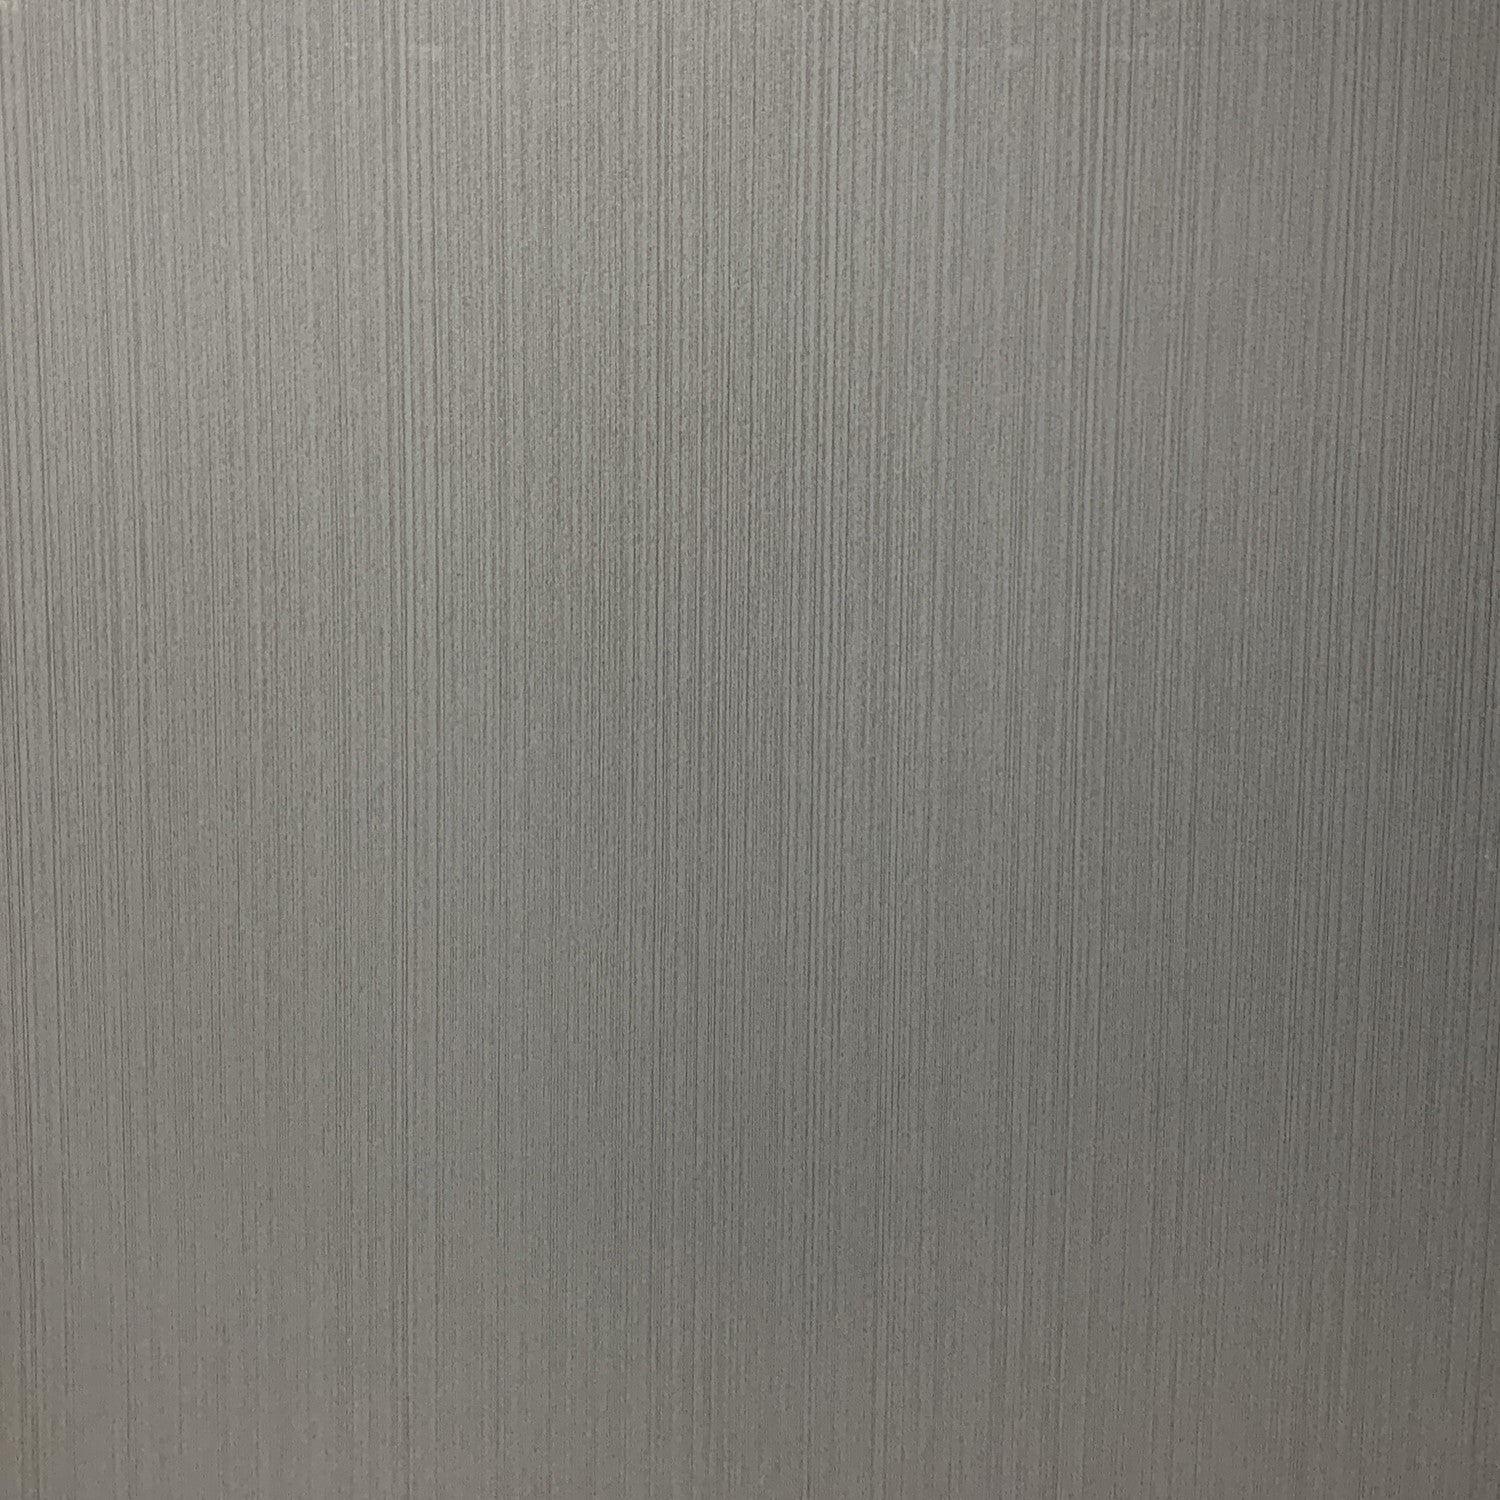 Céramique mat gris ligné noir 24x24